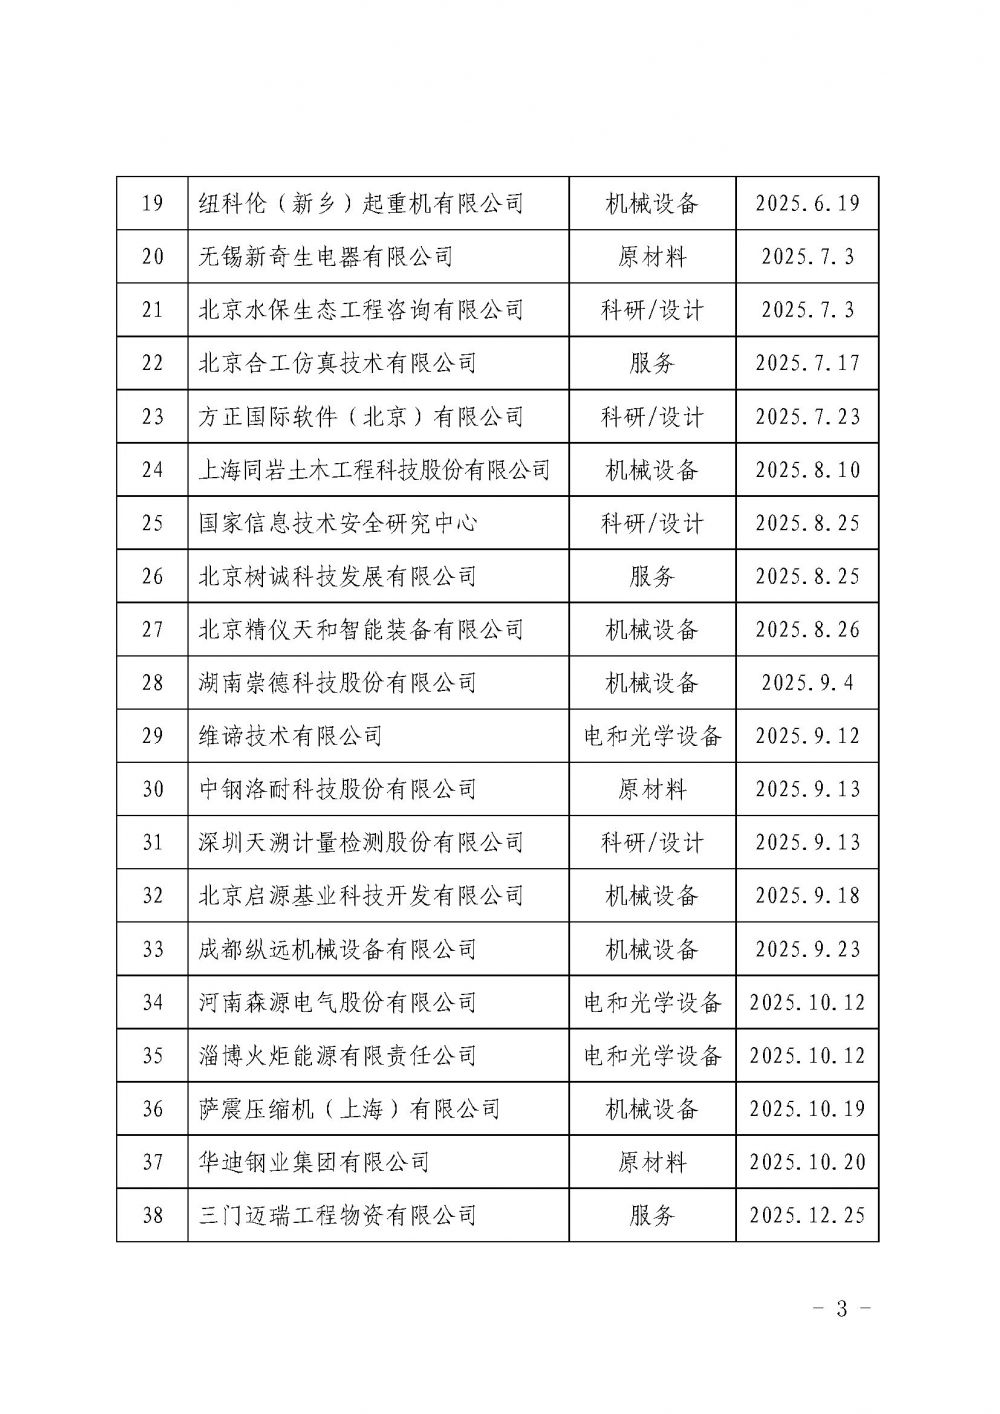 中国核能行业协会关于发布第二十一批核能行业合格供应商名录的公告_页面_3.jpg